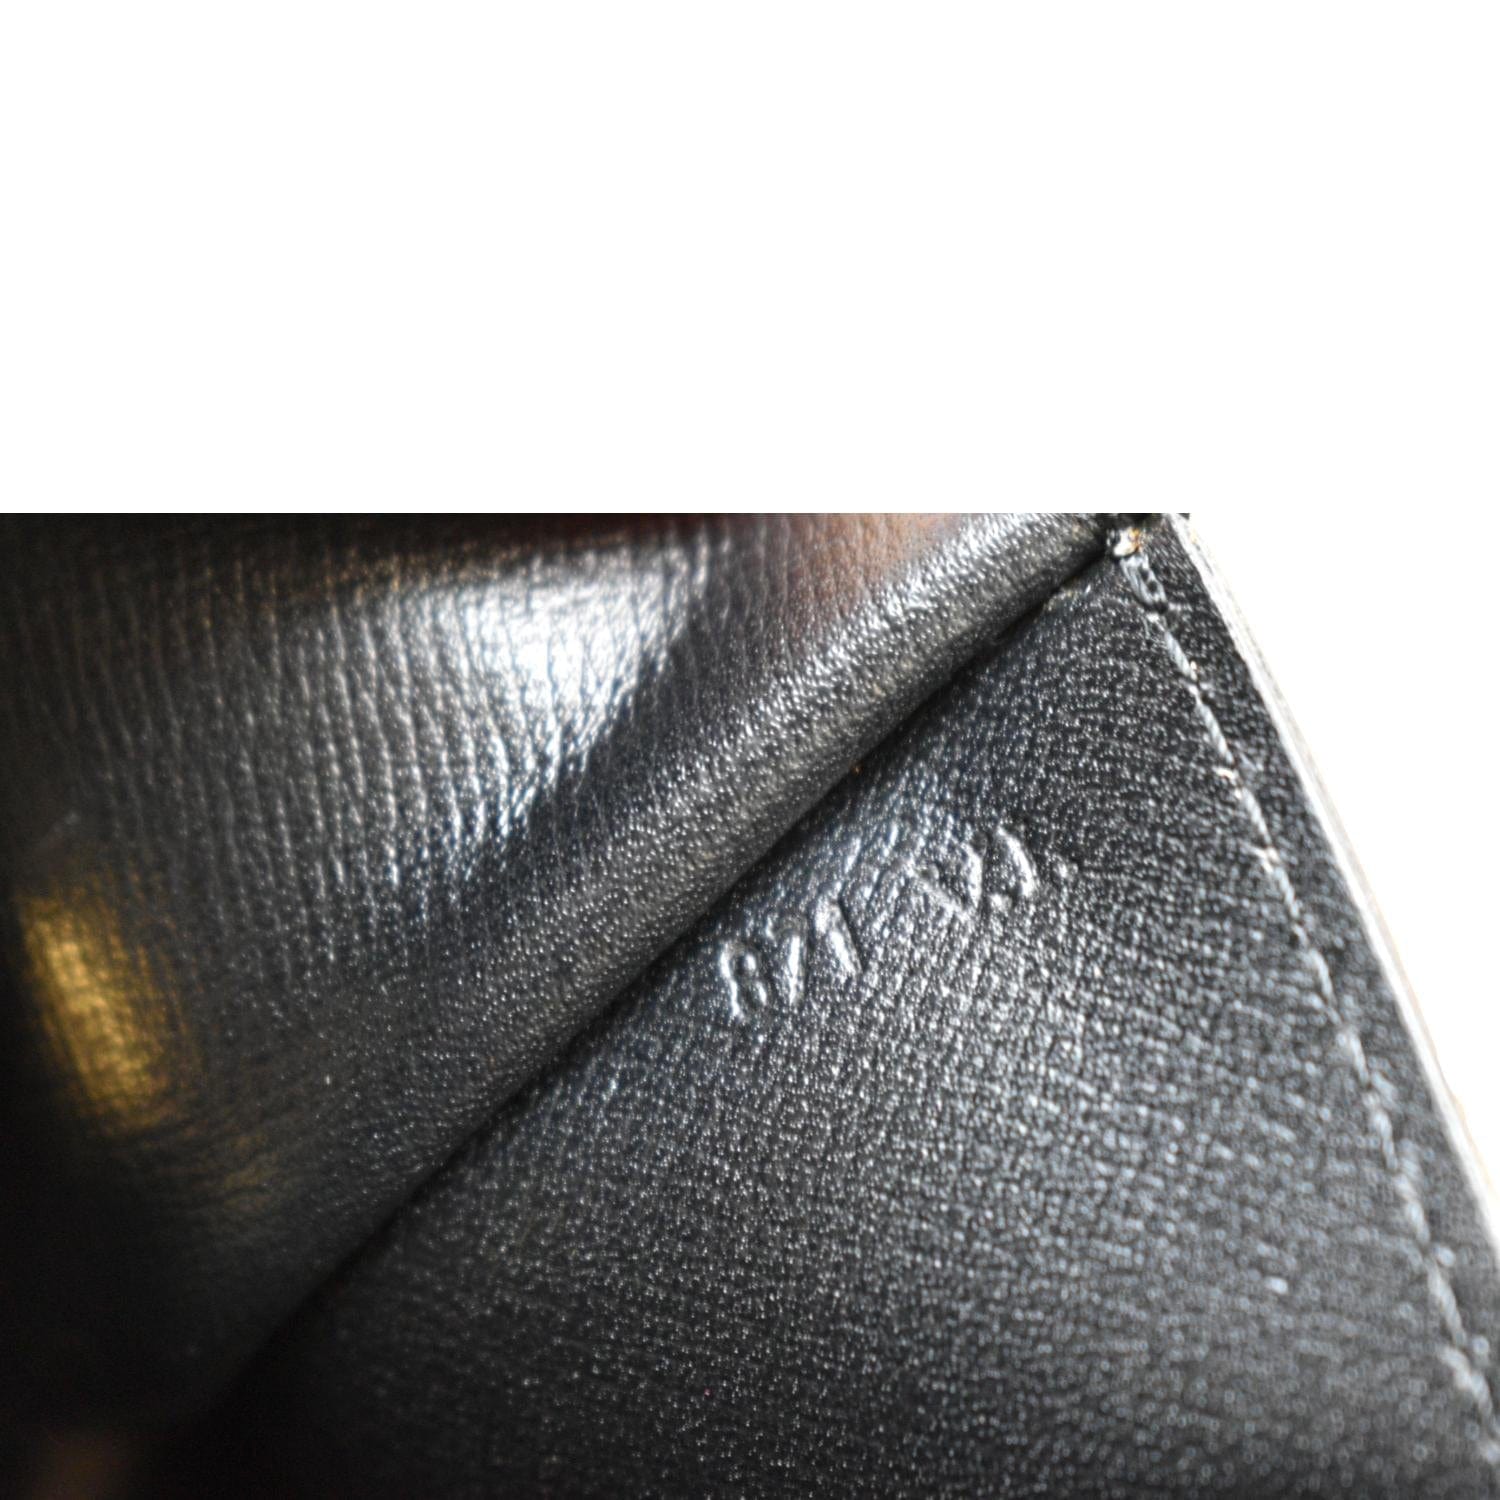 Louis Vuitton Shoulder Bag Pochette Montaigne M59292 Epi Leather